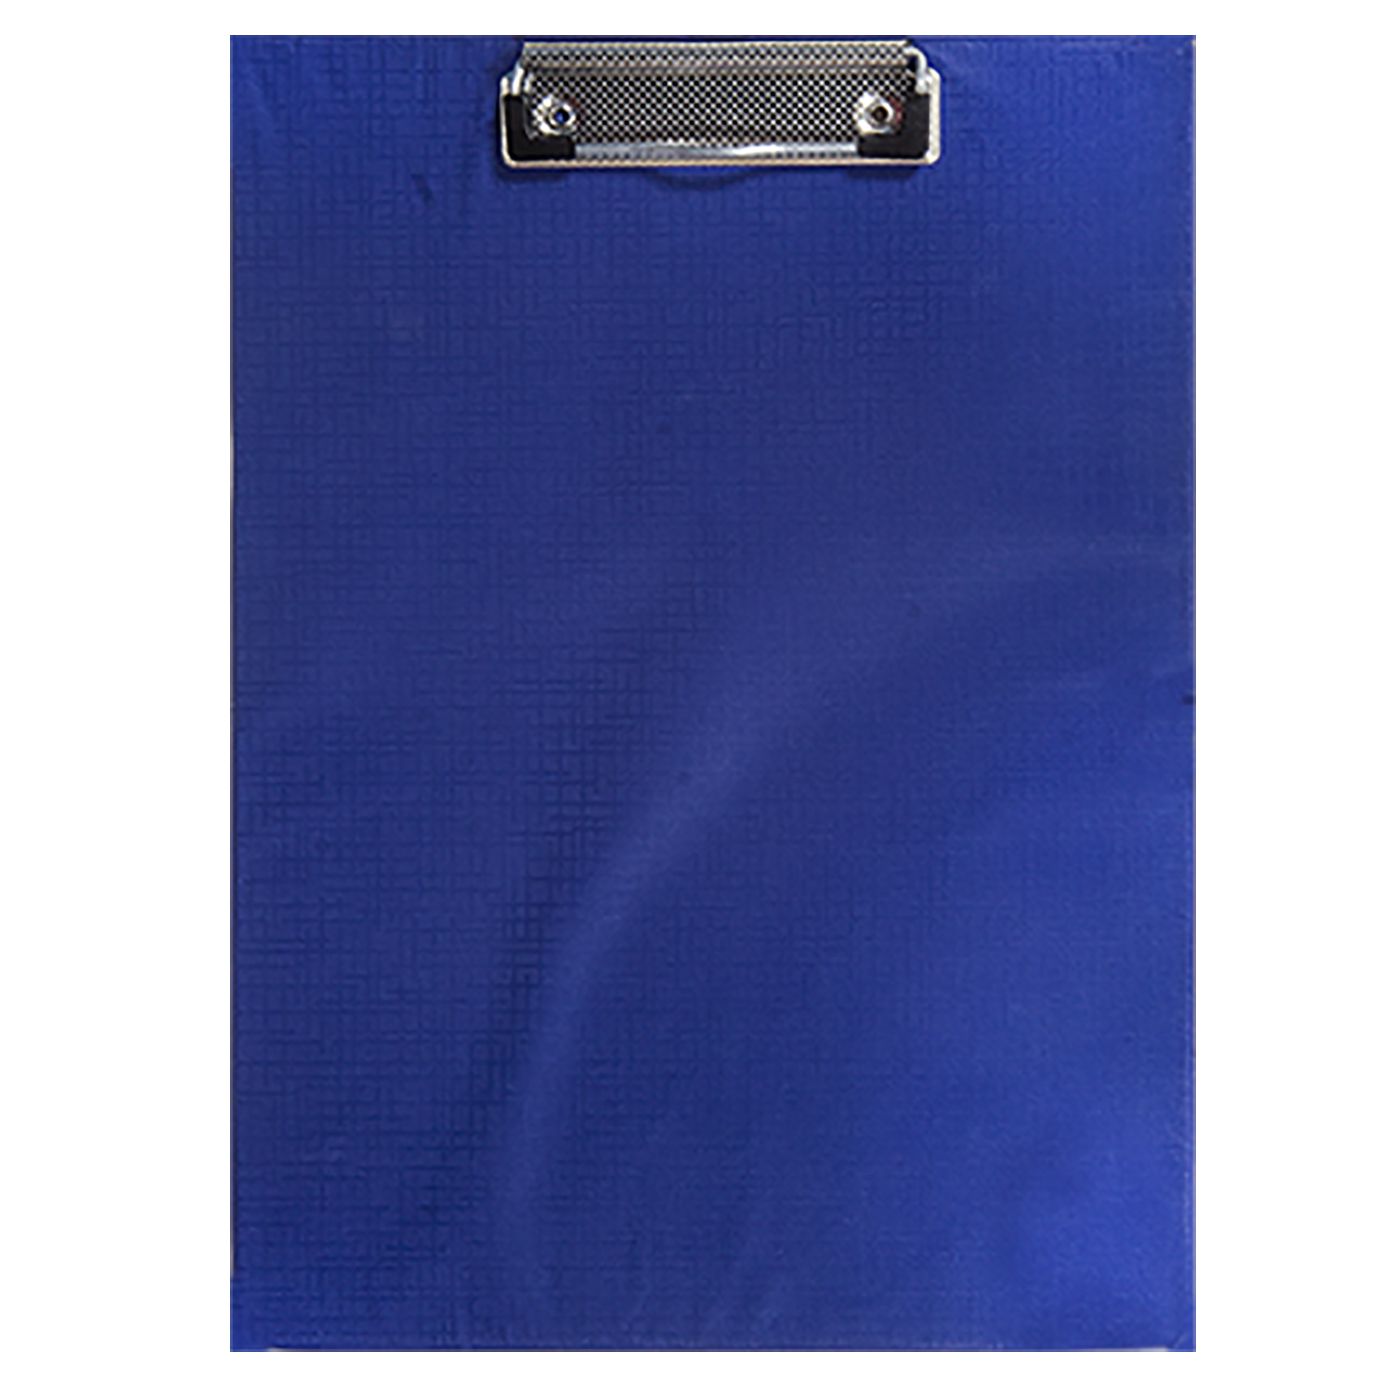 Ντοσιέ Σεμιναρίου Μπλε 23×0,3×32εκ. Justnote 50-632-blue (Χρώμα: Μπλε) – Justnote – 50-632-blue